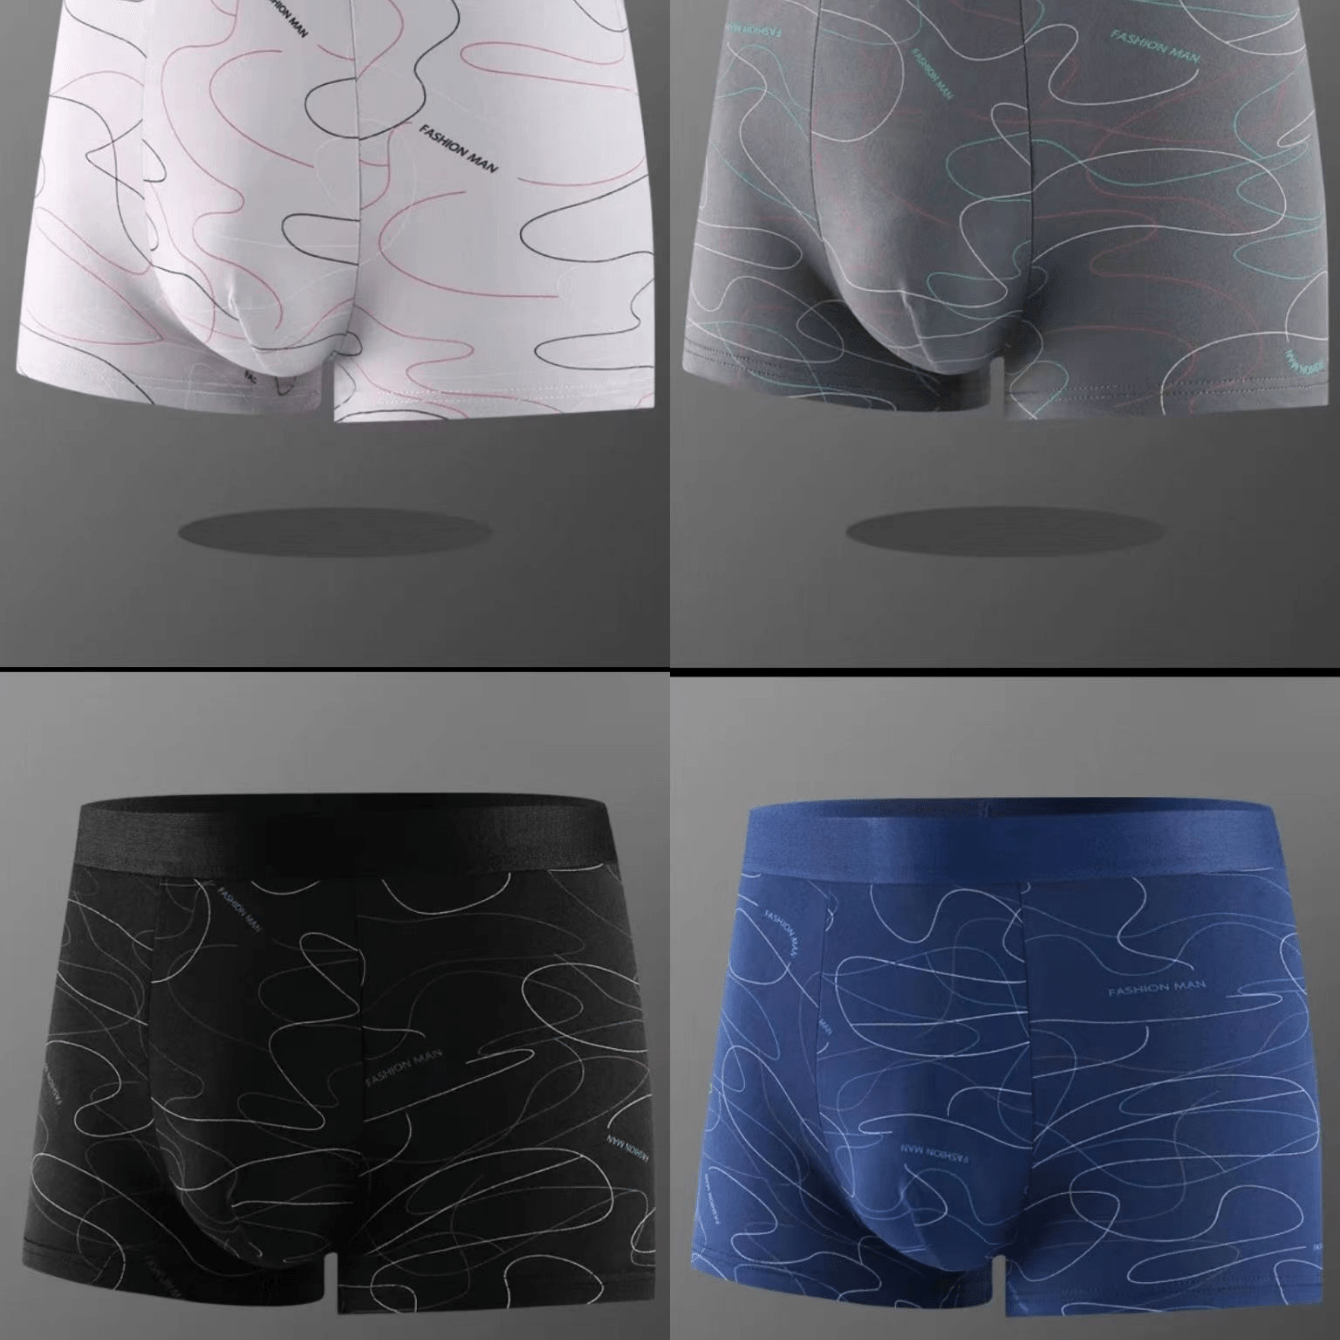 

4pcs Men's Comfortable Breathable Stretchy Graphic Boxer Briefs, Men's Underwear